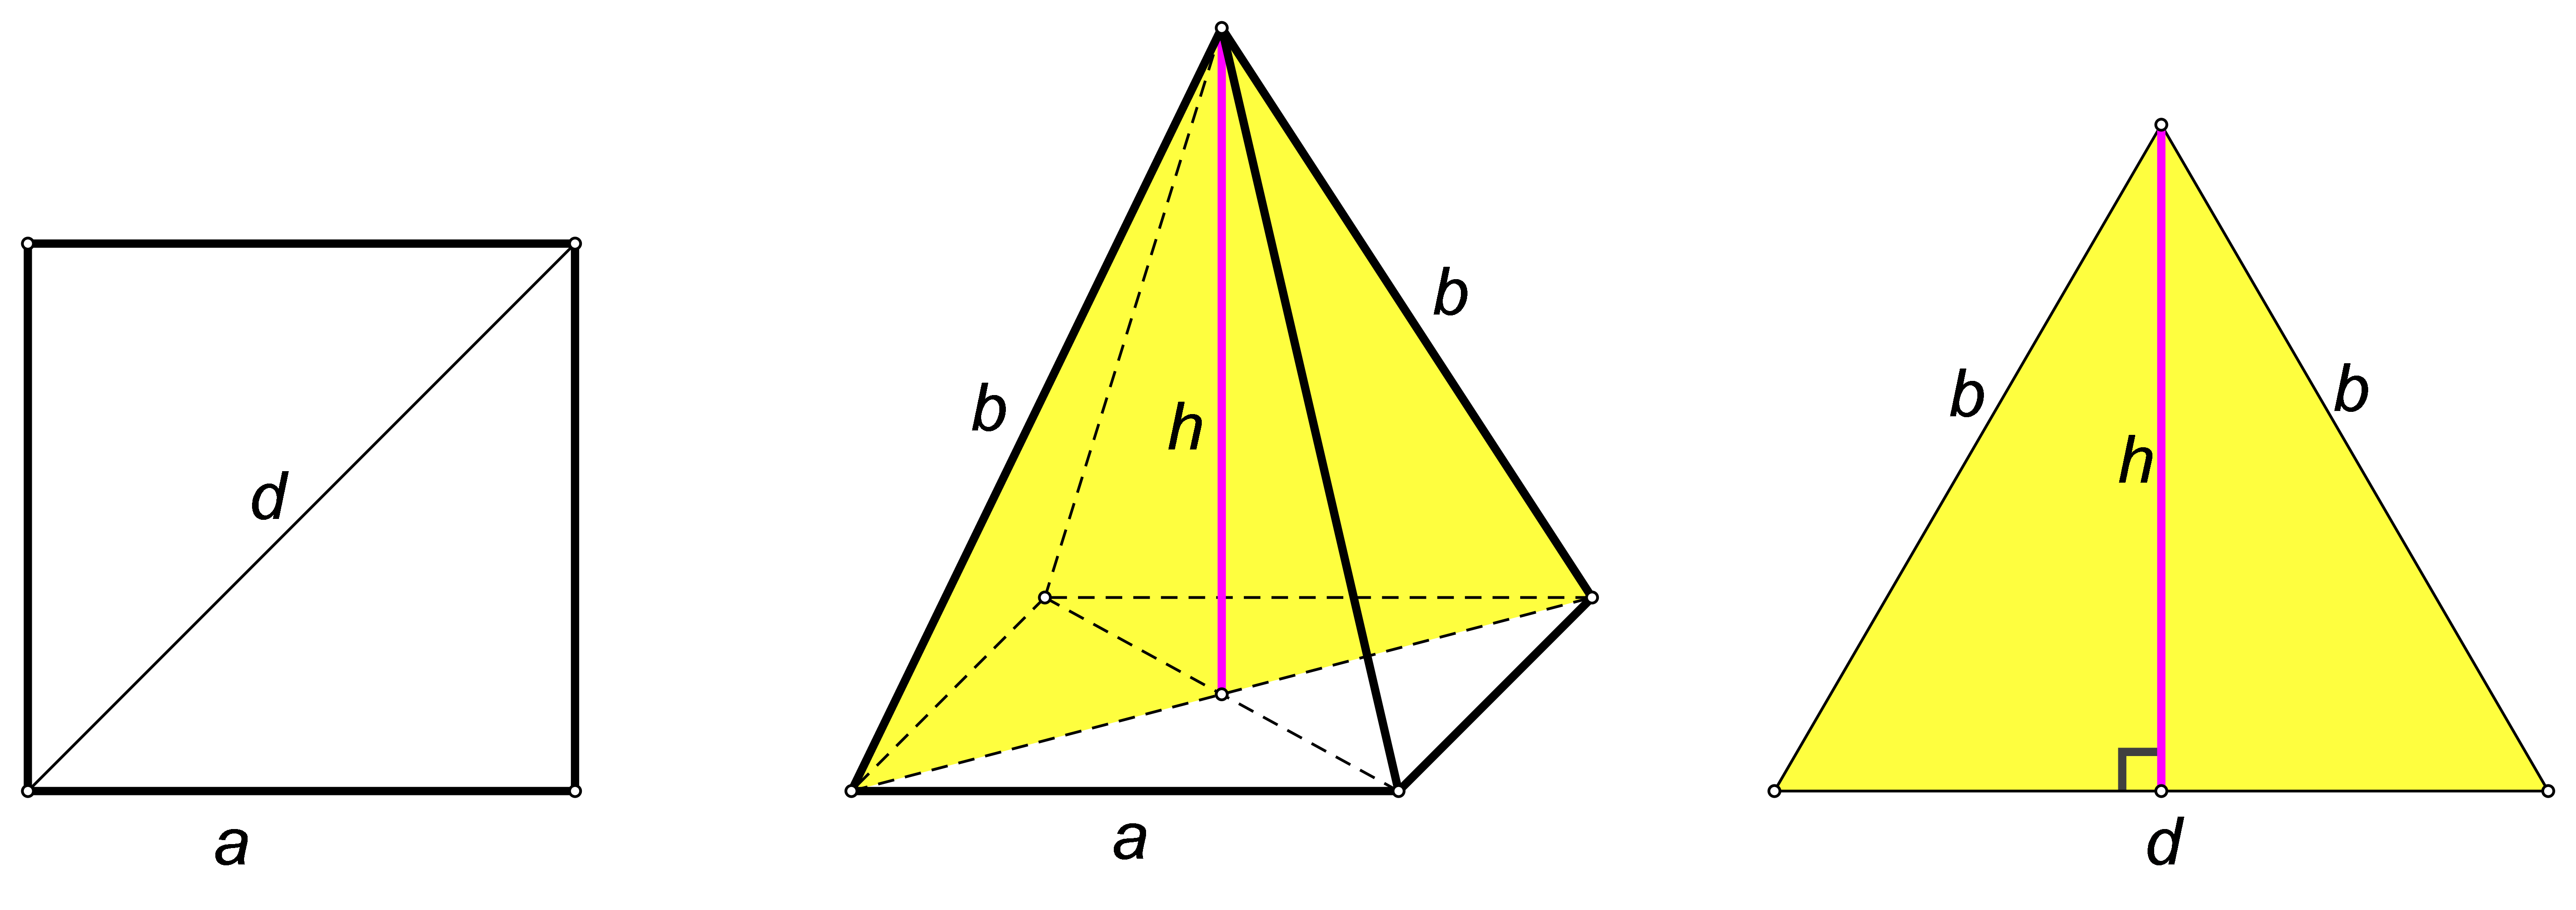 Slika prikazuje piramidu i presjek pravilne četverostrane piramide ravninom koja je određena njenim vrhom i nasuprotnim vrhovima baze.